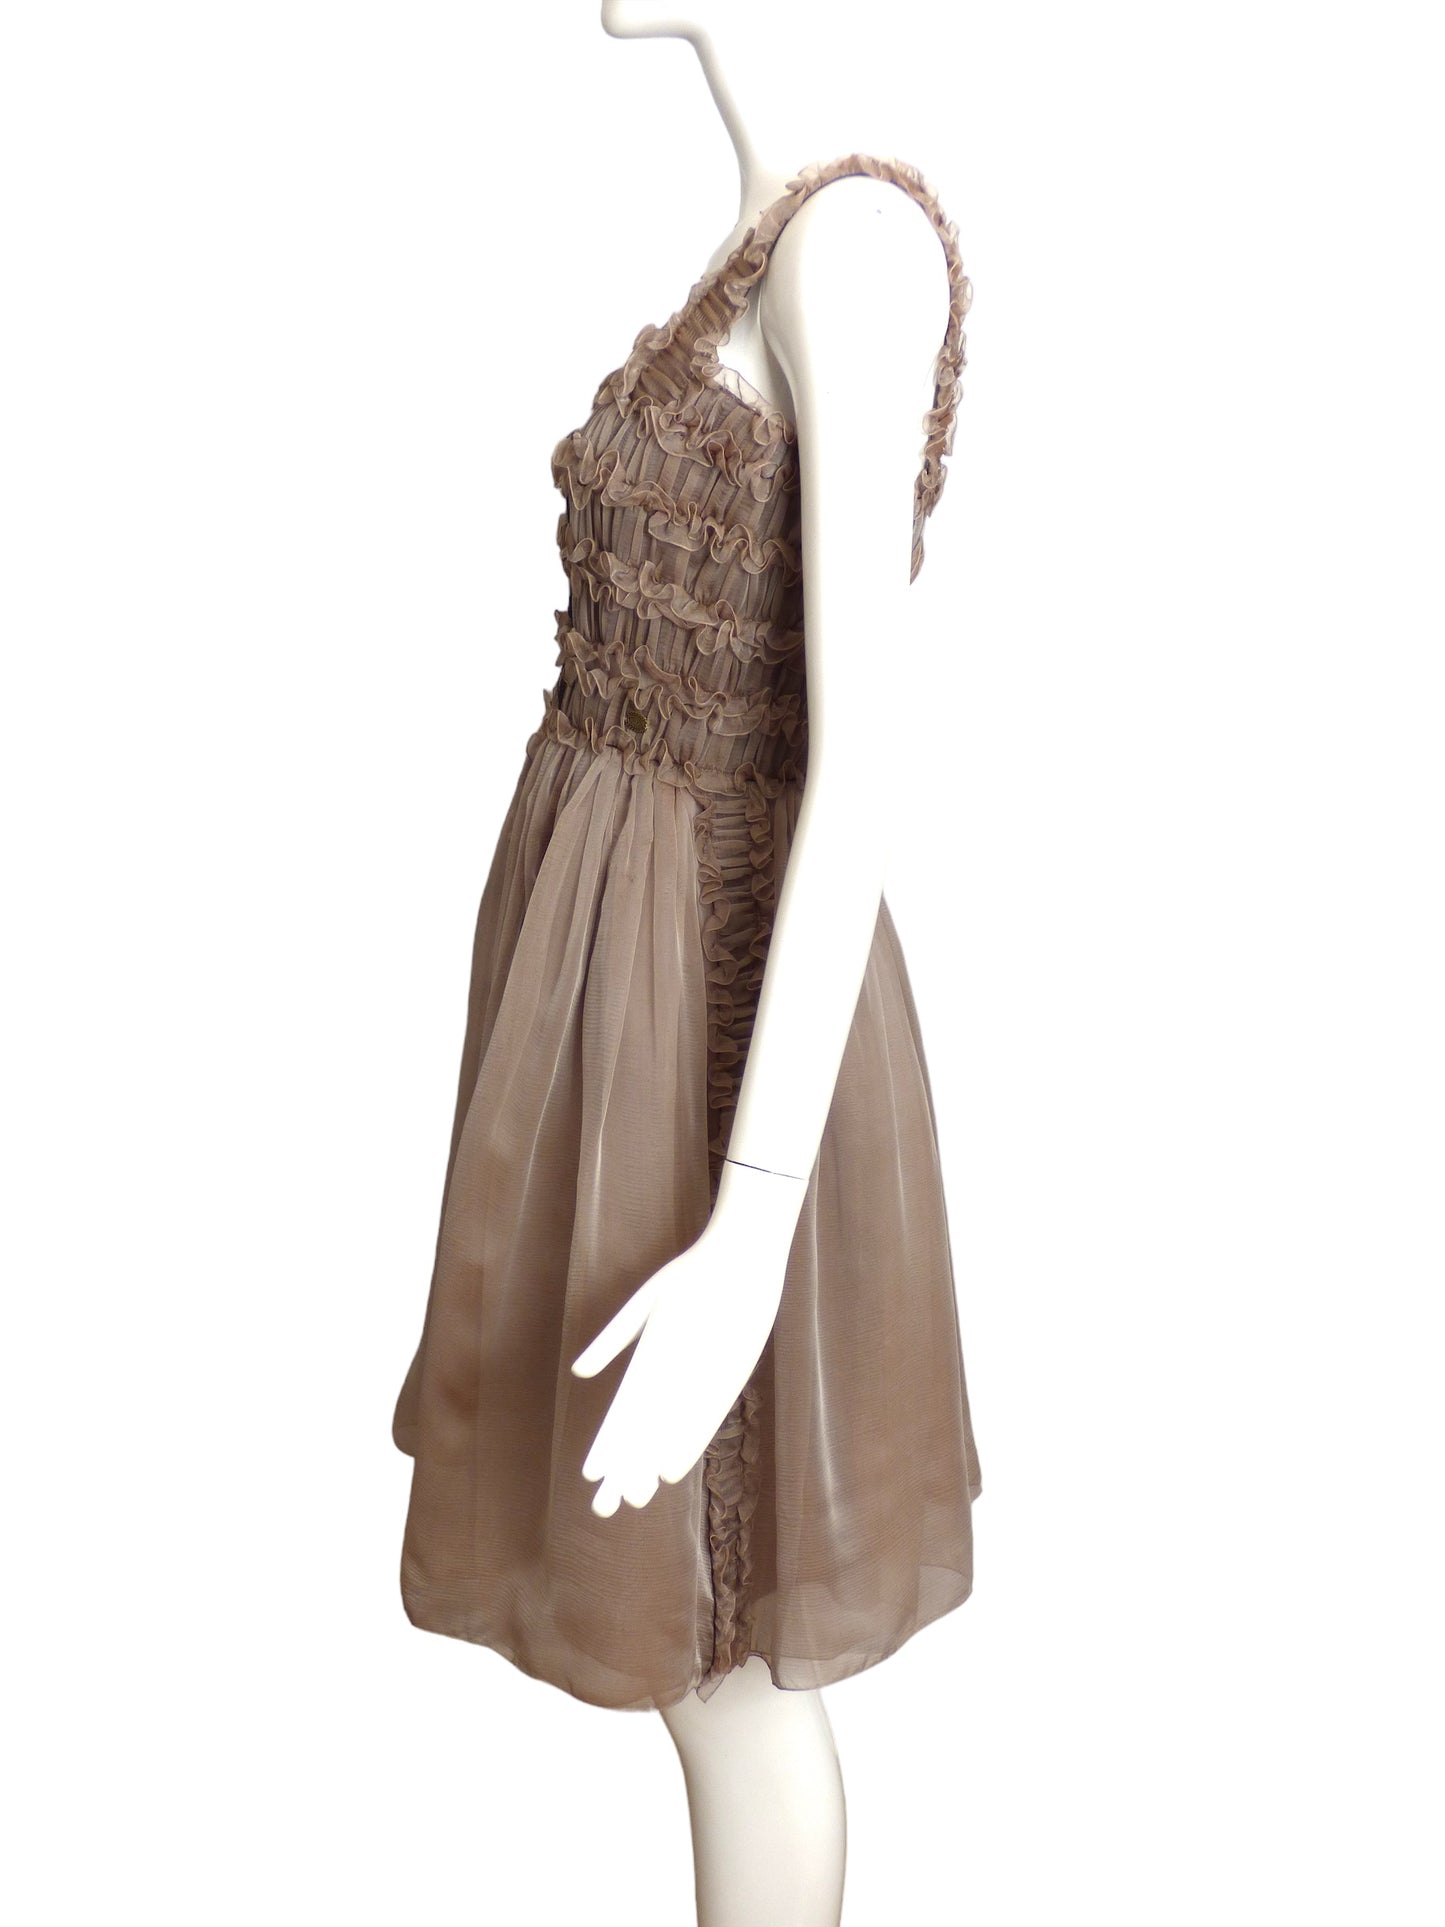 CHANEL- 2009 Grey Chiffon Ruffle Dress, Size 6